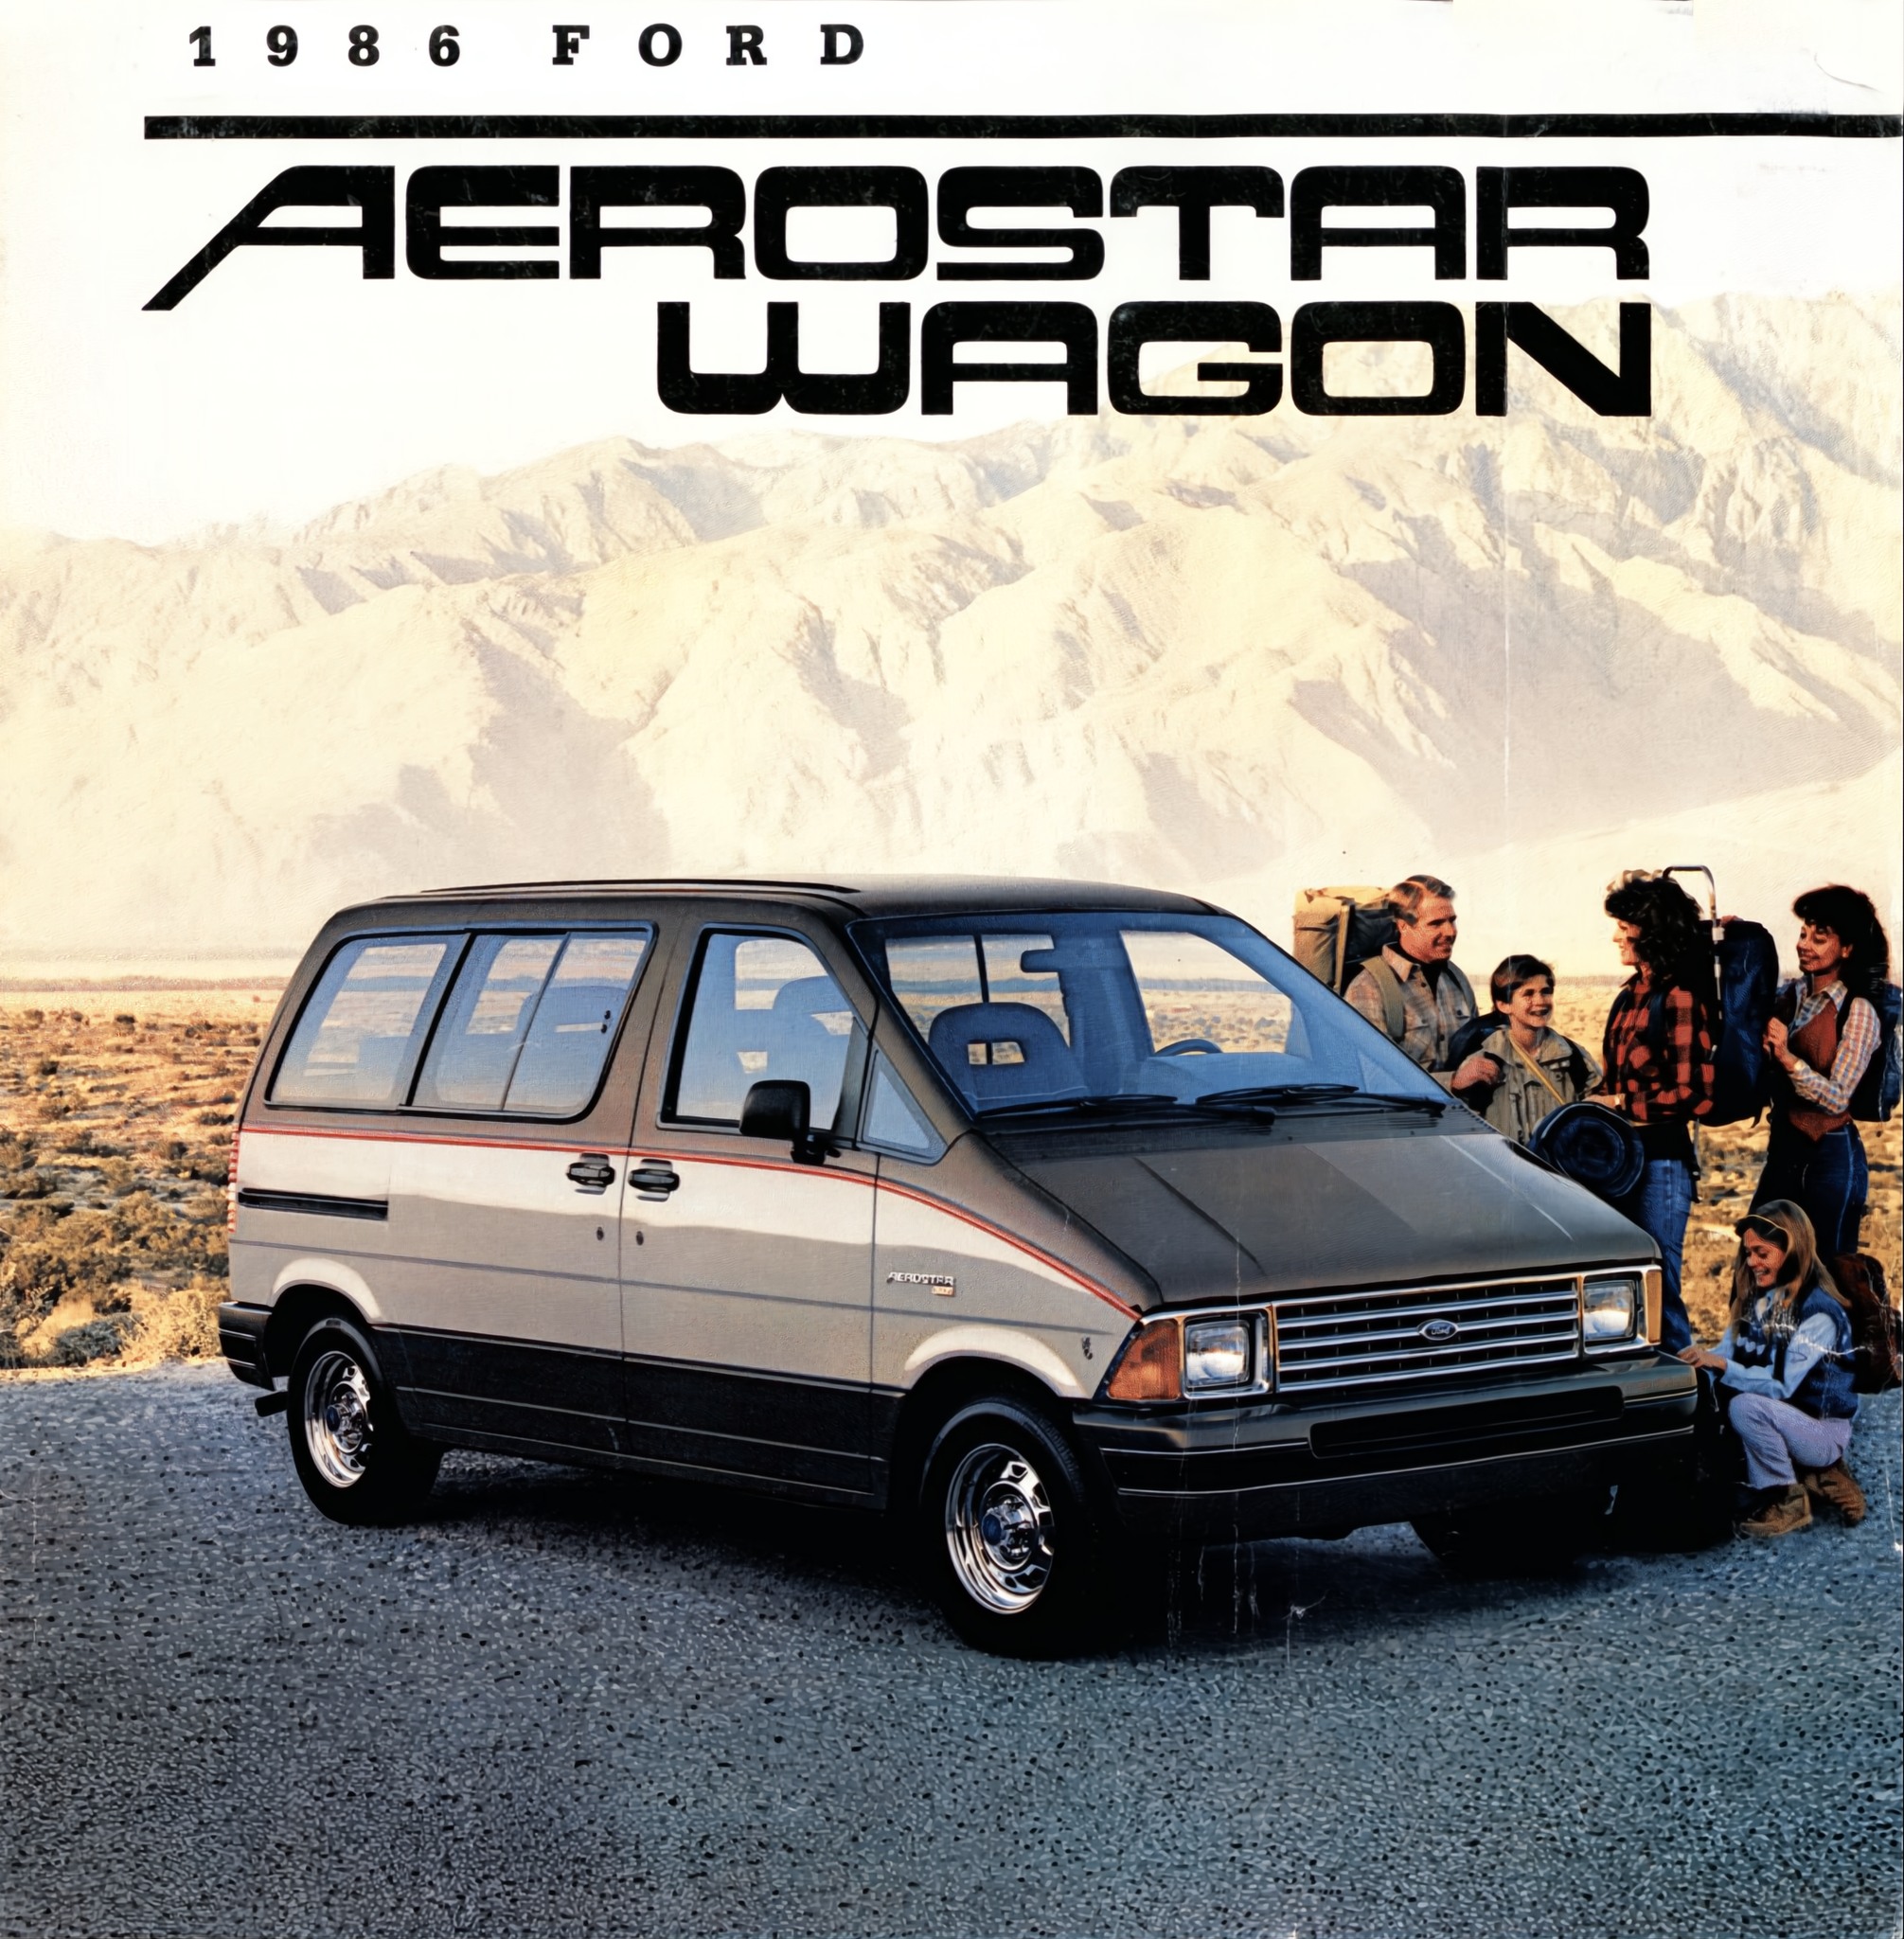 1986 Ford Aerostar Wagon Brochure 01